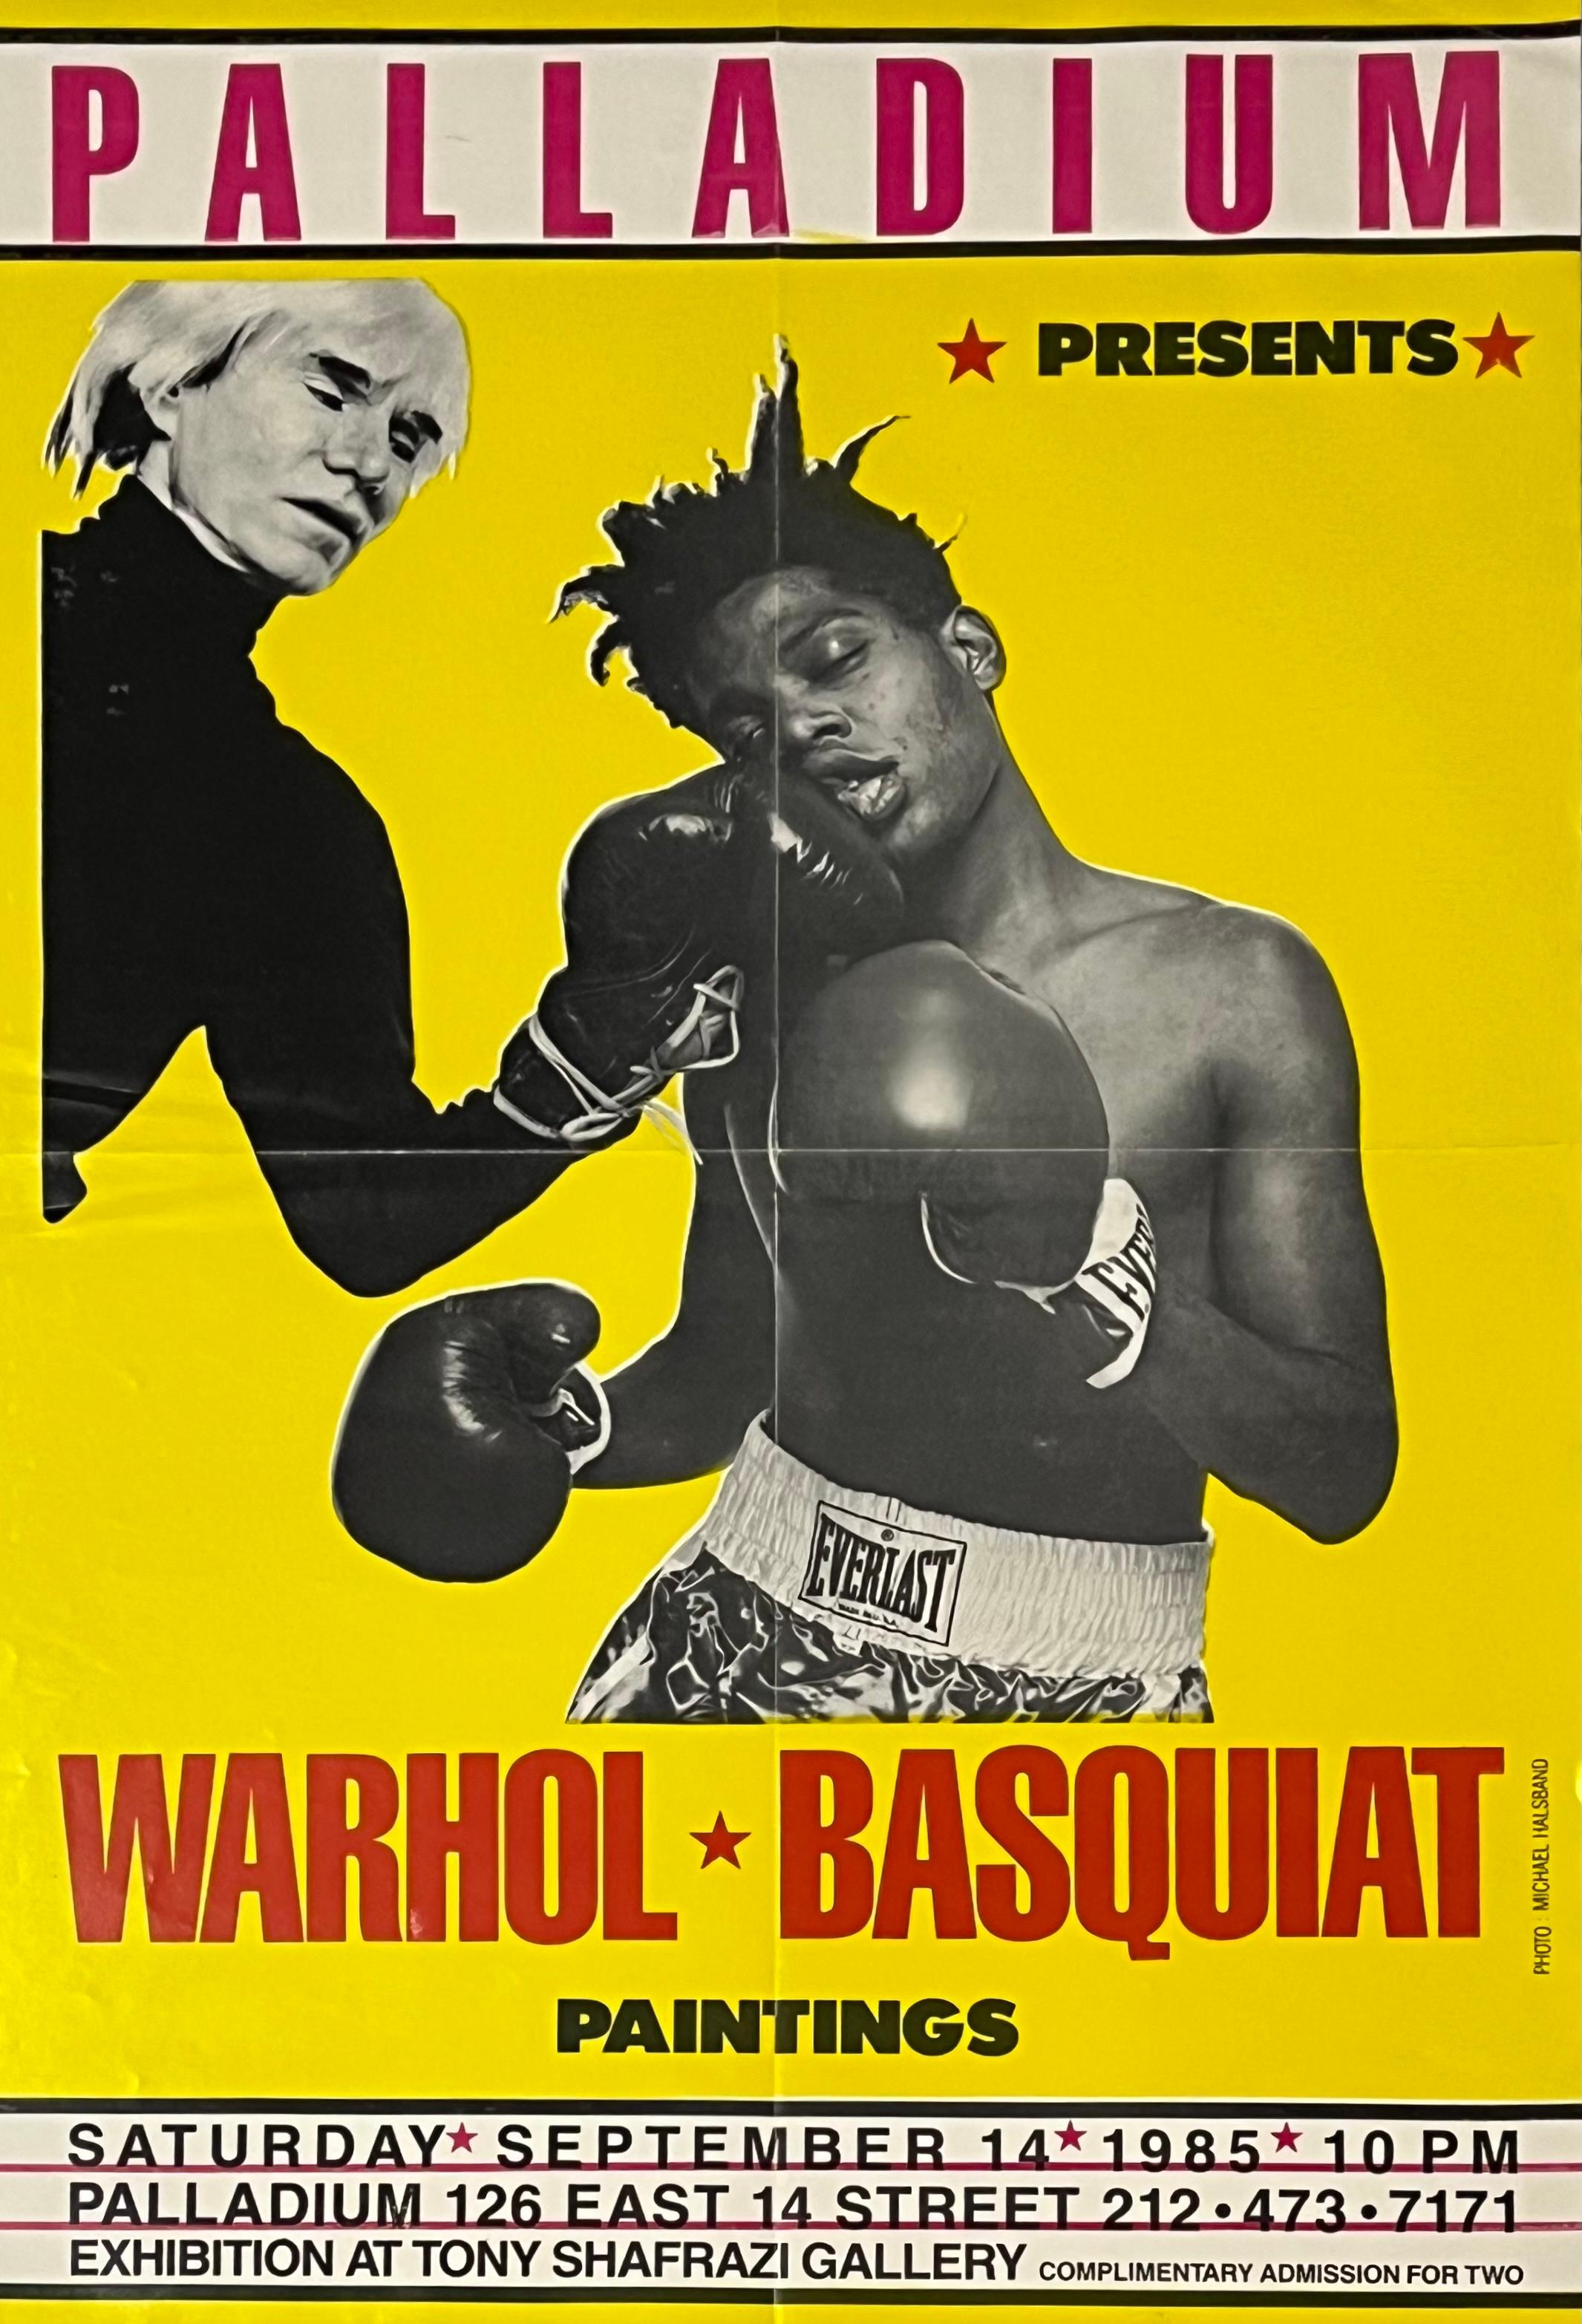 Andy Warhol Jean-Michel Basquiat Boxing Poster 1985: Kompletter Satz von 2 Werken: 
Die begehrtesten Basquiat/Warhol-Sammlerstücke, die es gibt - präsentiert als komplettes 2er-Set. Herausgegeben von Tony Shafrazi und Bruno Bischofberger anlässlich